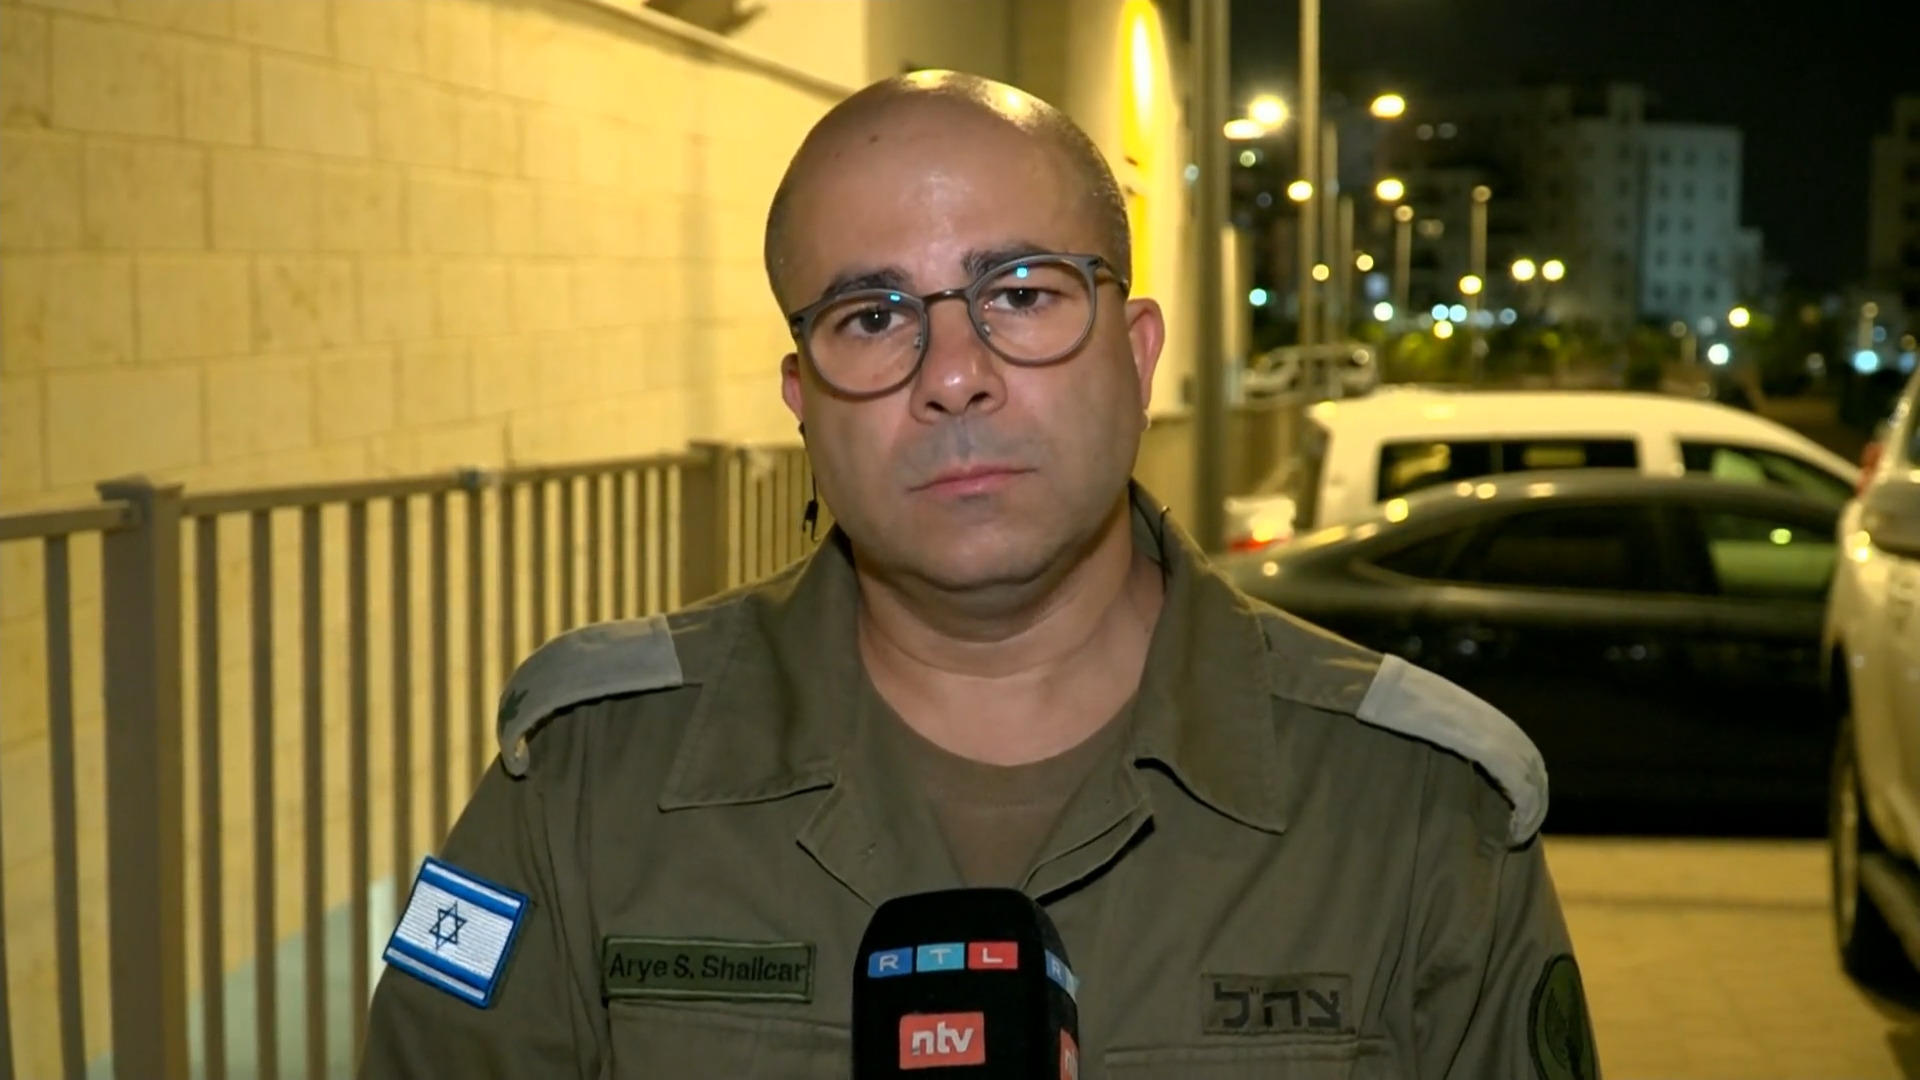 Questi sono gli obiettivi dell'attacco al suolo, ha detto il portavoce dell'IDF in un'intervista a RTL